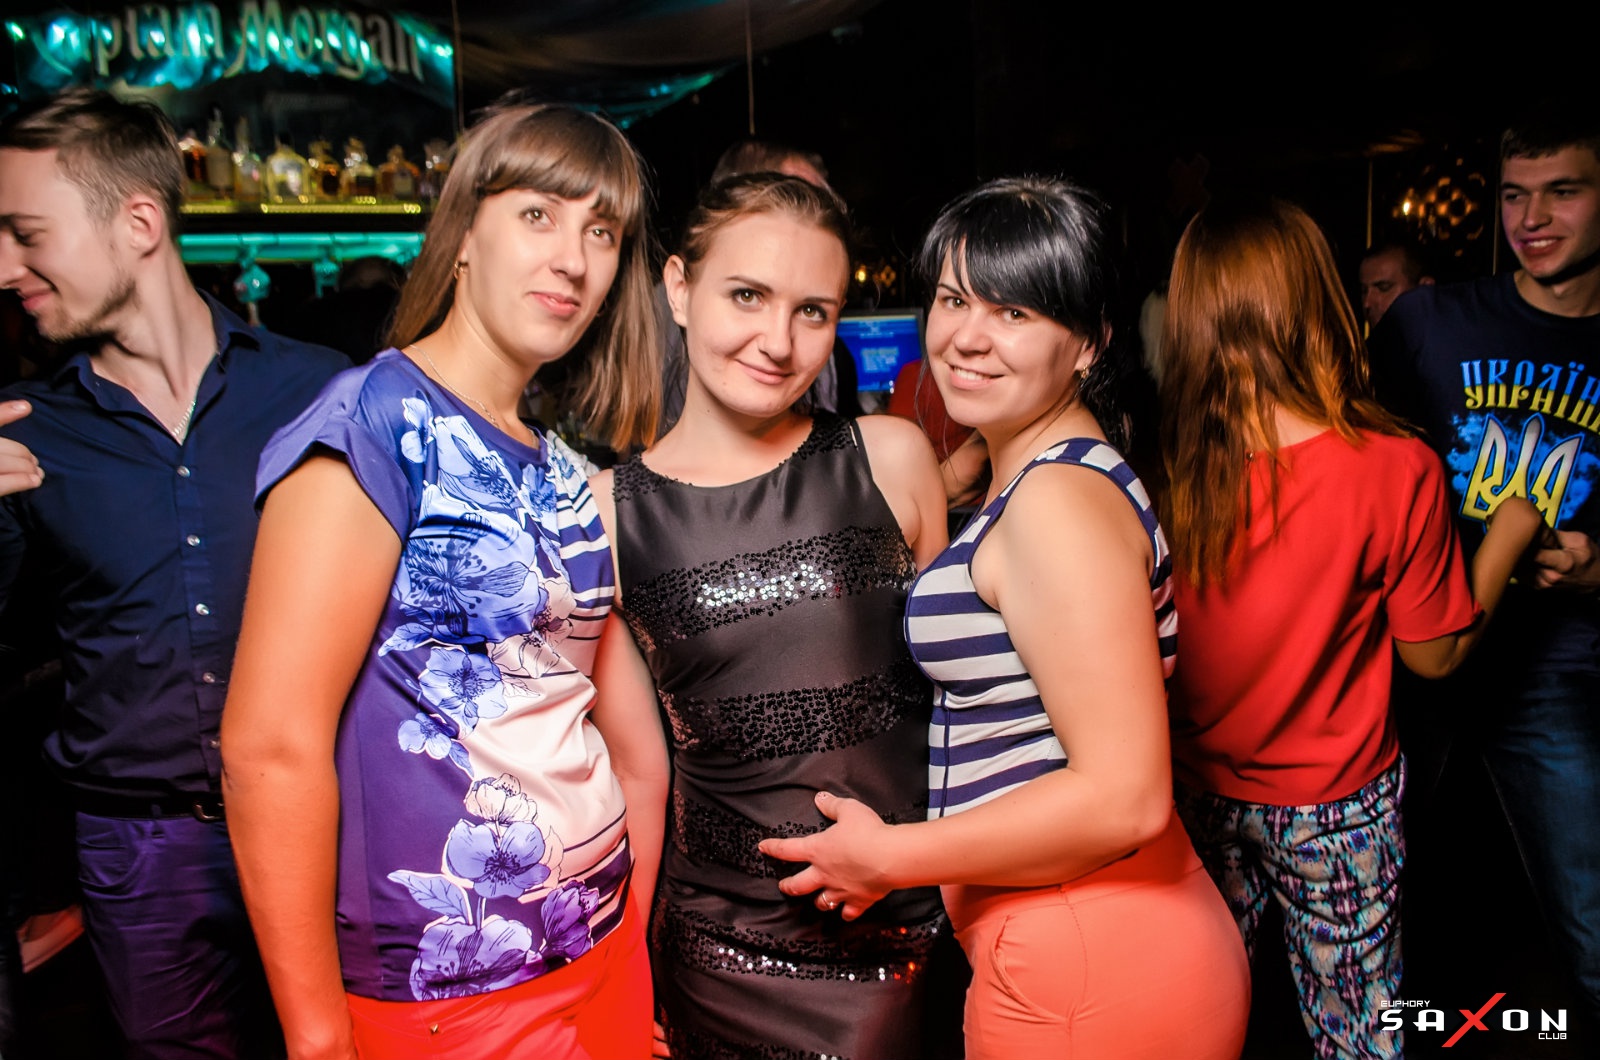 Секс Клуб В Иваново